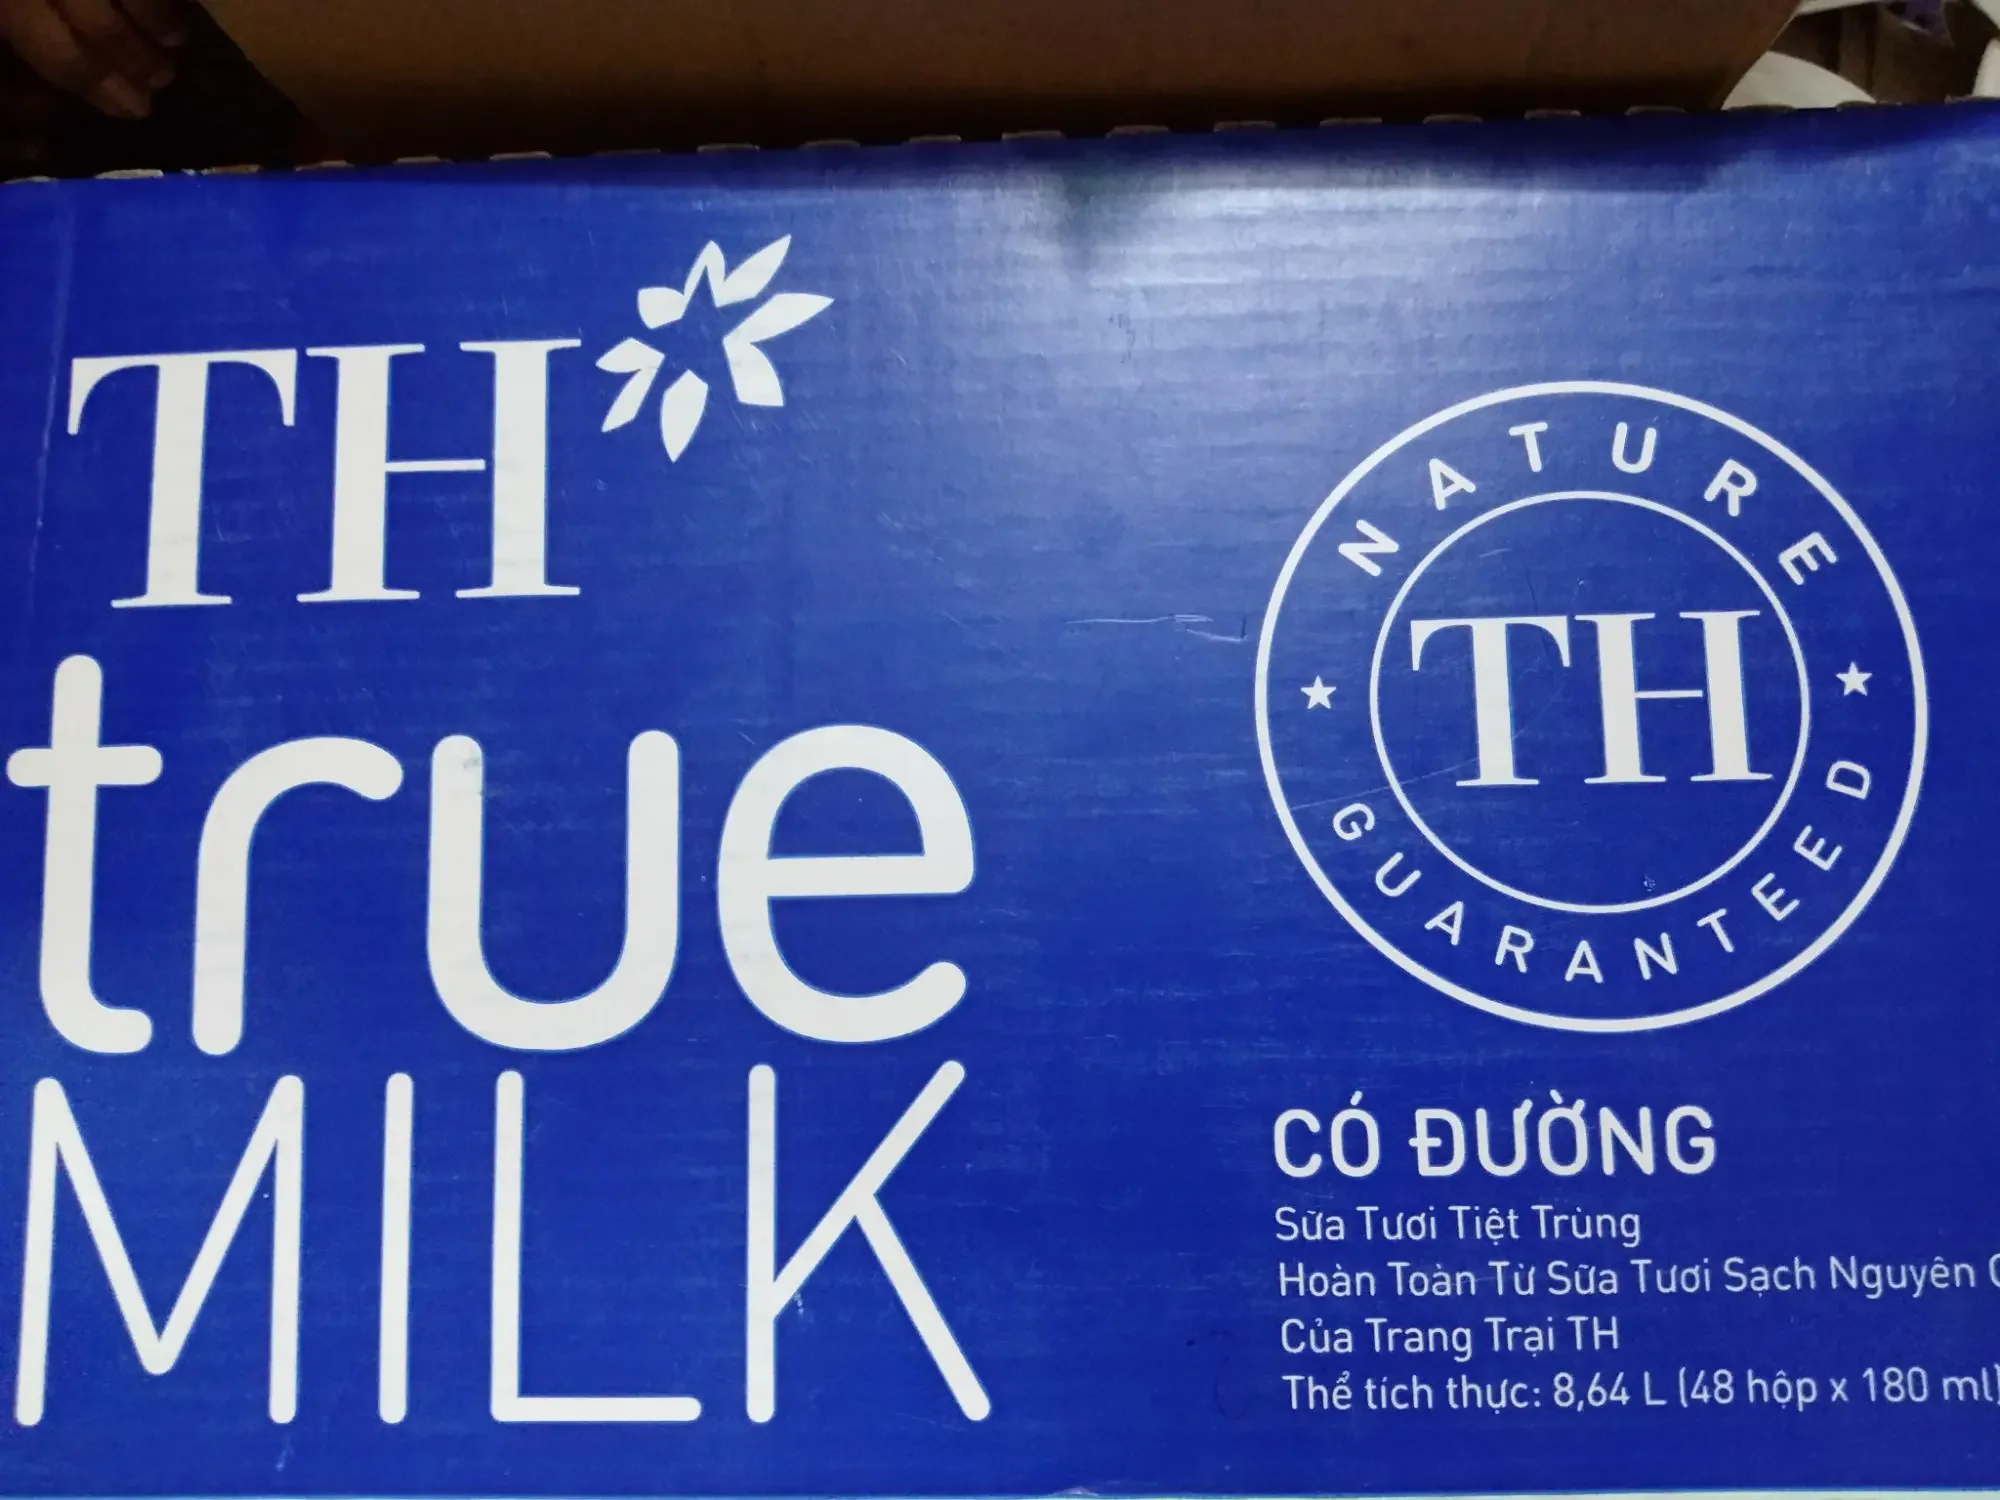 Sữa TH True Milk